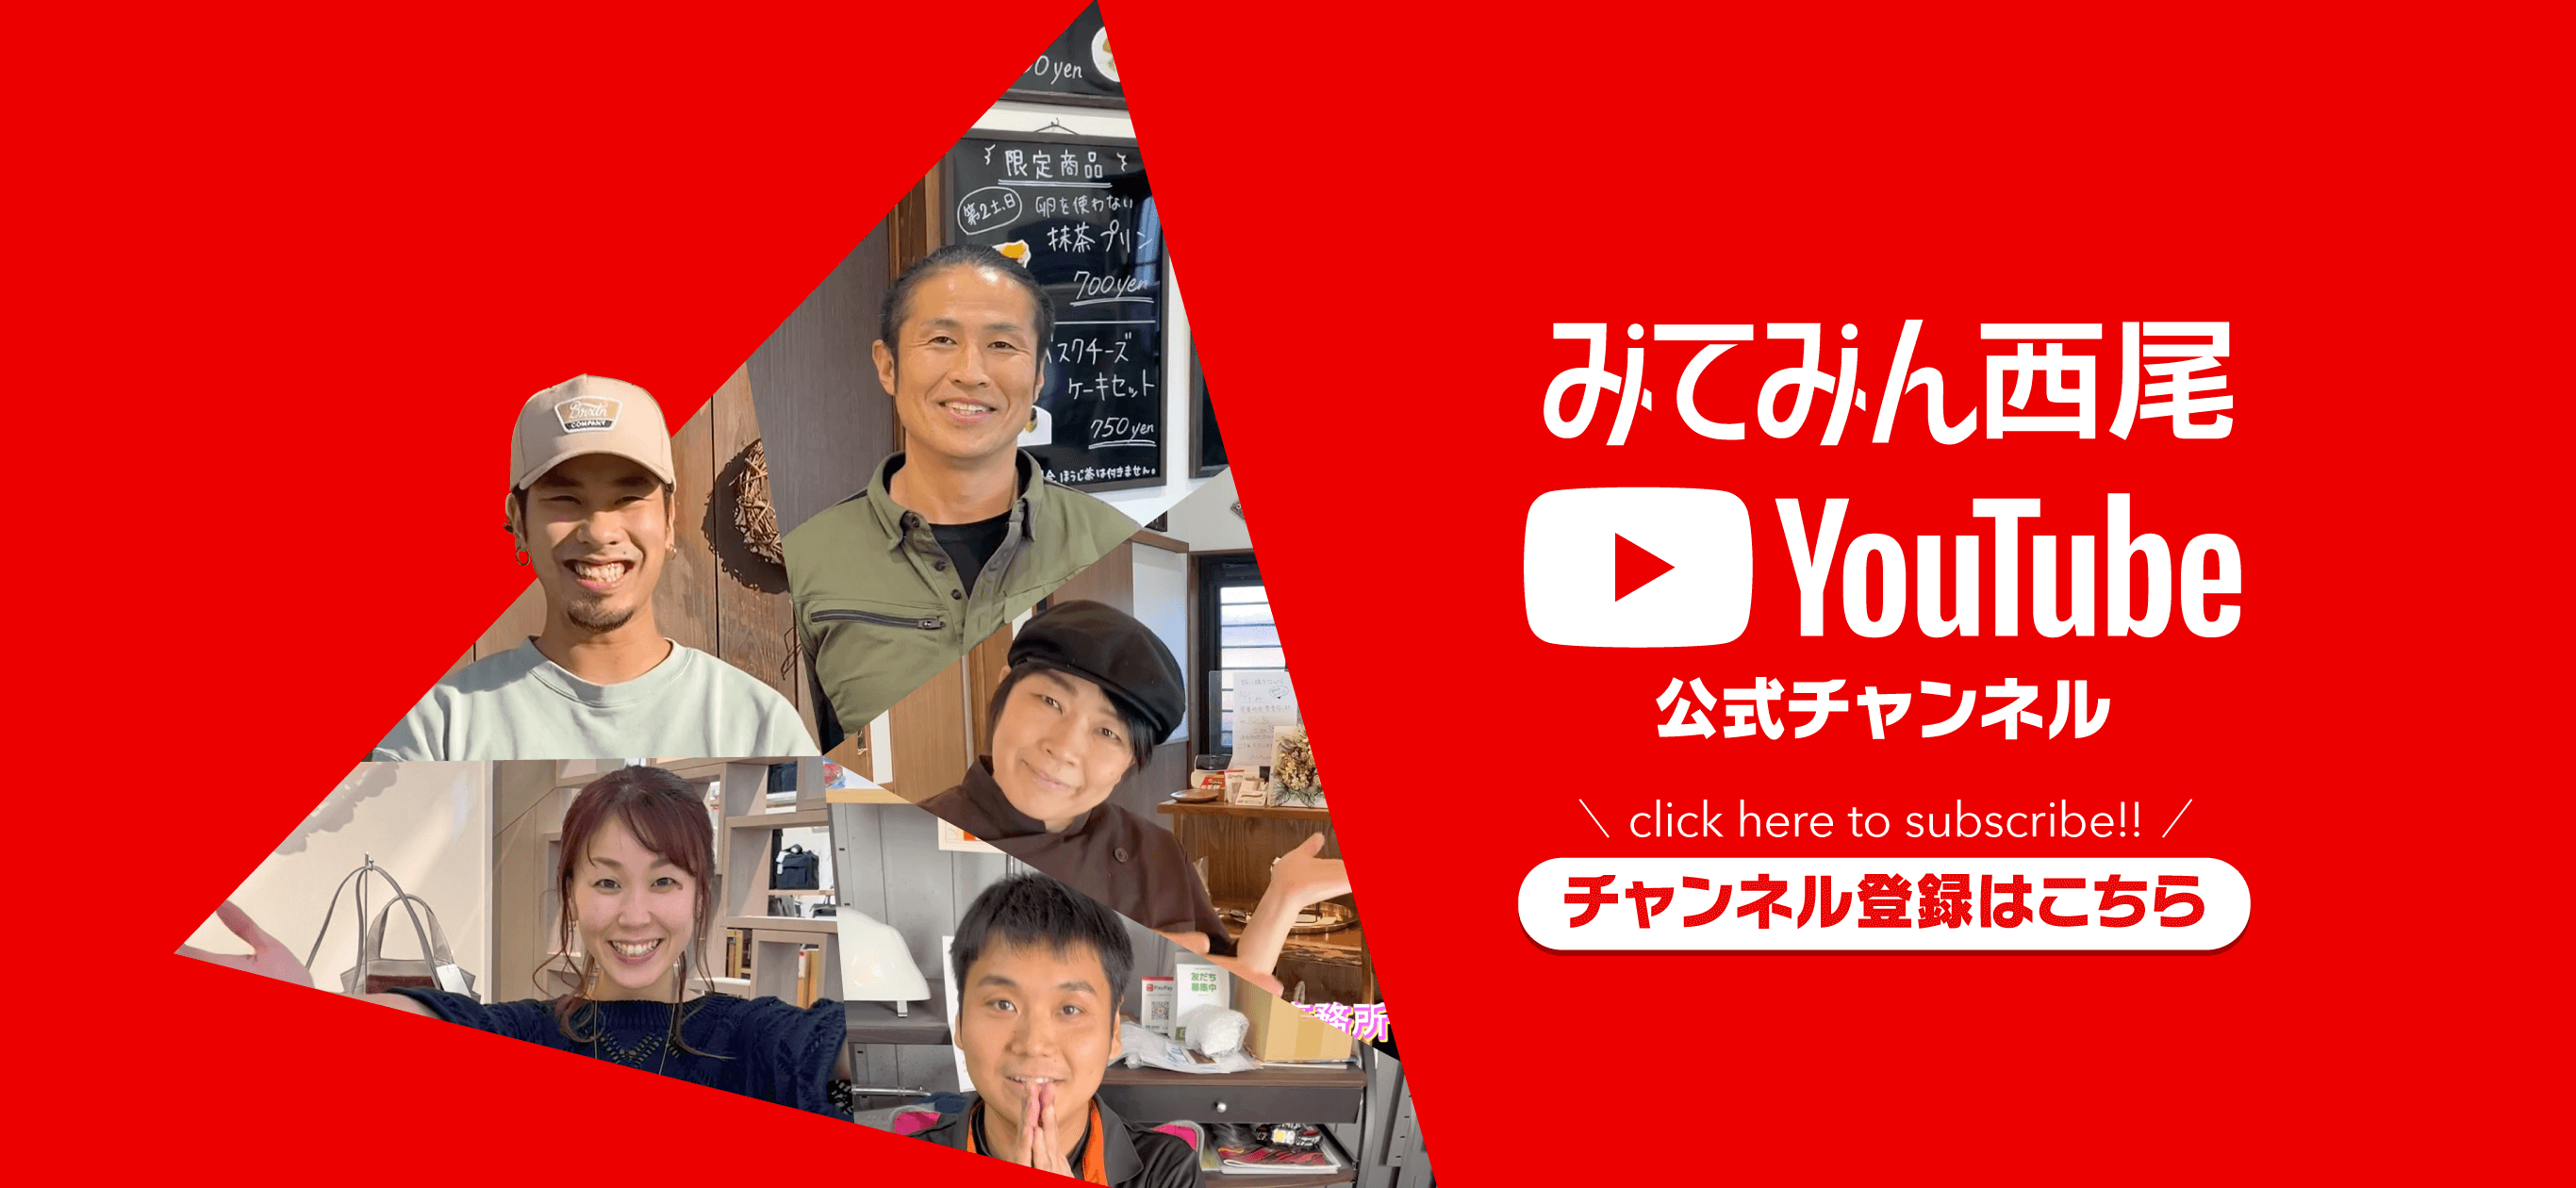 みてみん西尾YouTube公式チャンネル